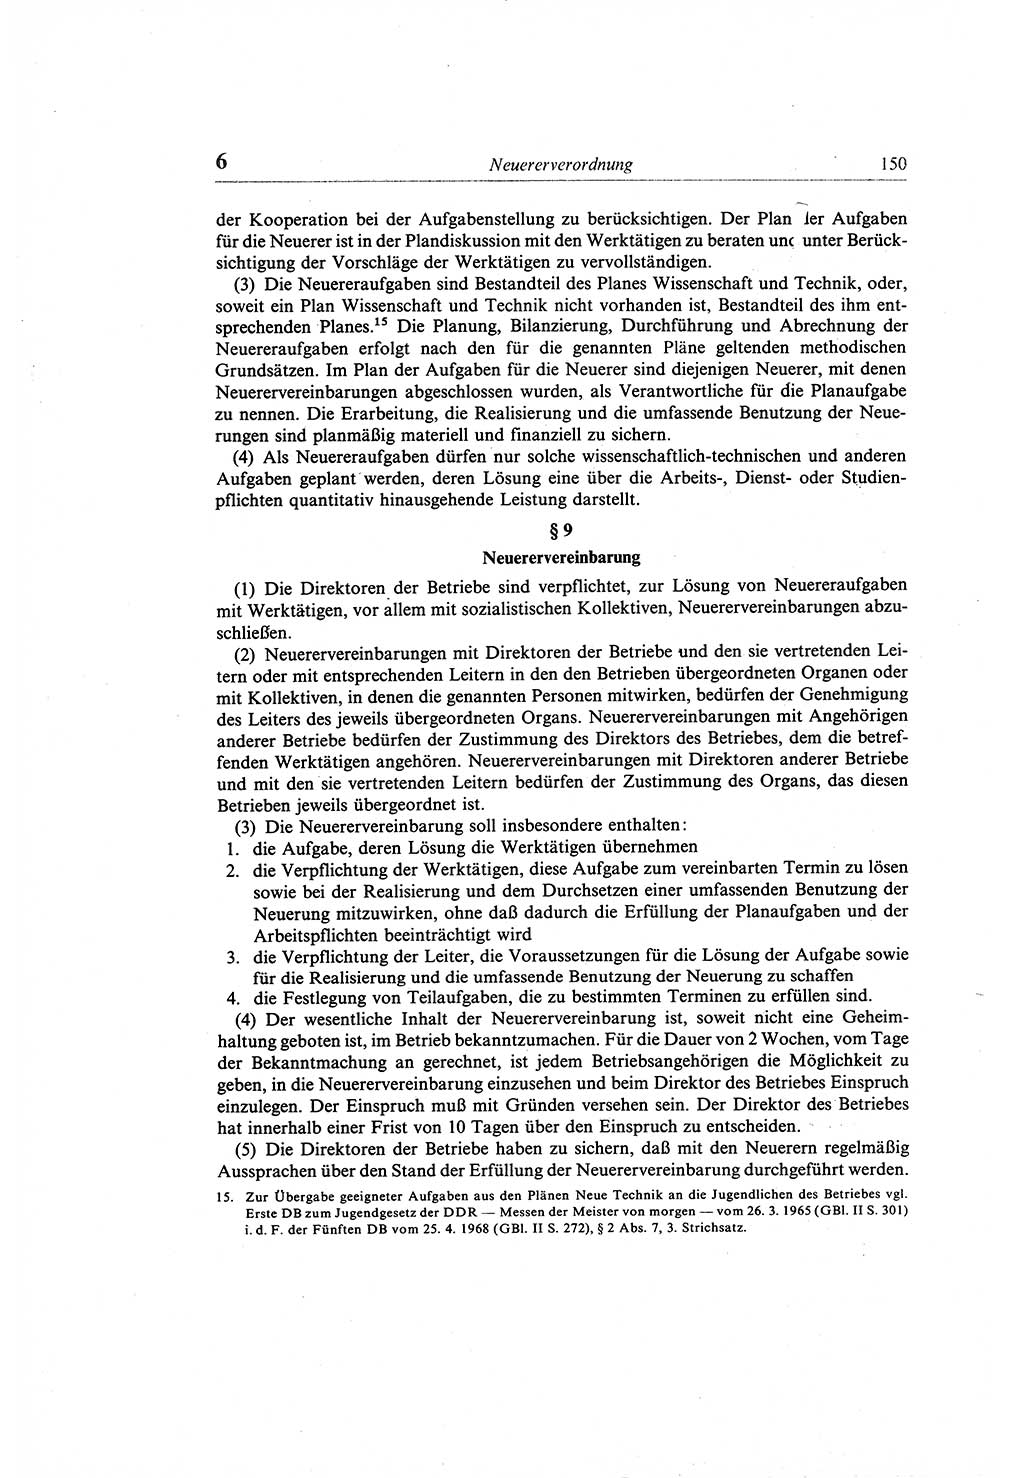 Gesetzbuch der Arbeit (GBA) und andere ausgewählte rechtliche Bestimmungen [Deutsche Demokratische Republik (DDR)] 1968, Seite 150 (GBA DDR 1968, S. 150)